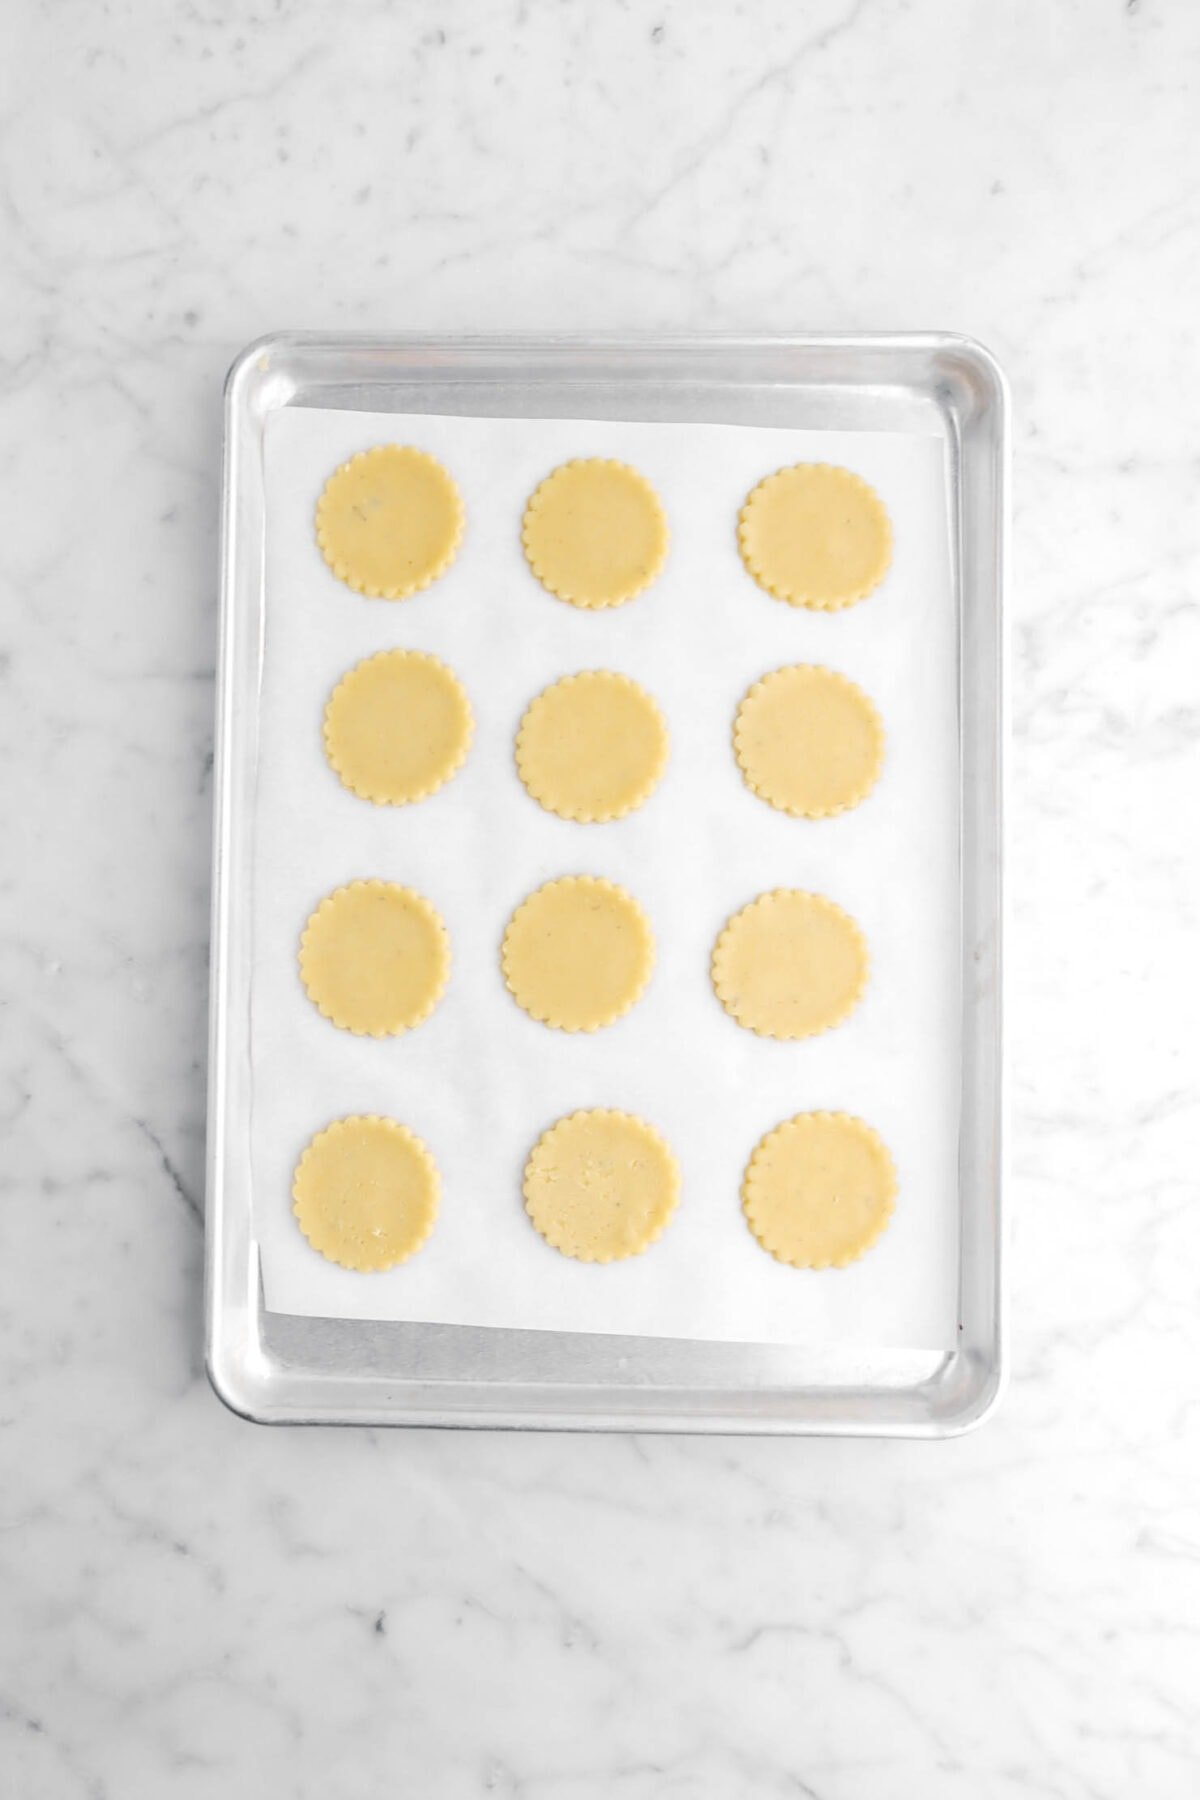 twelve unbaked cookies on sheet pan.